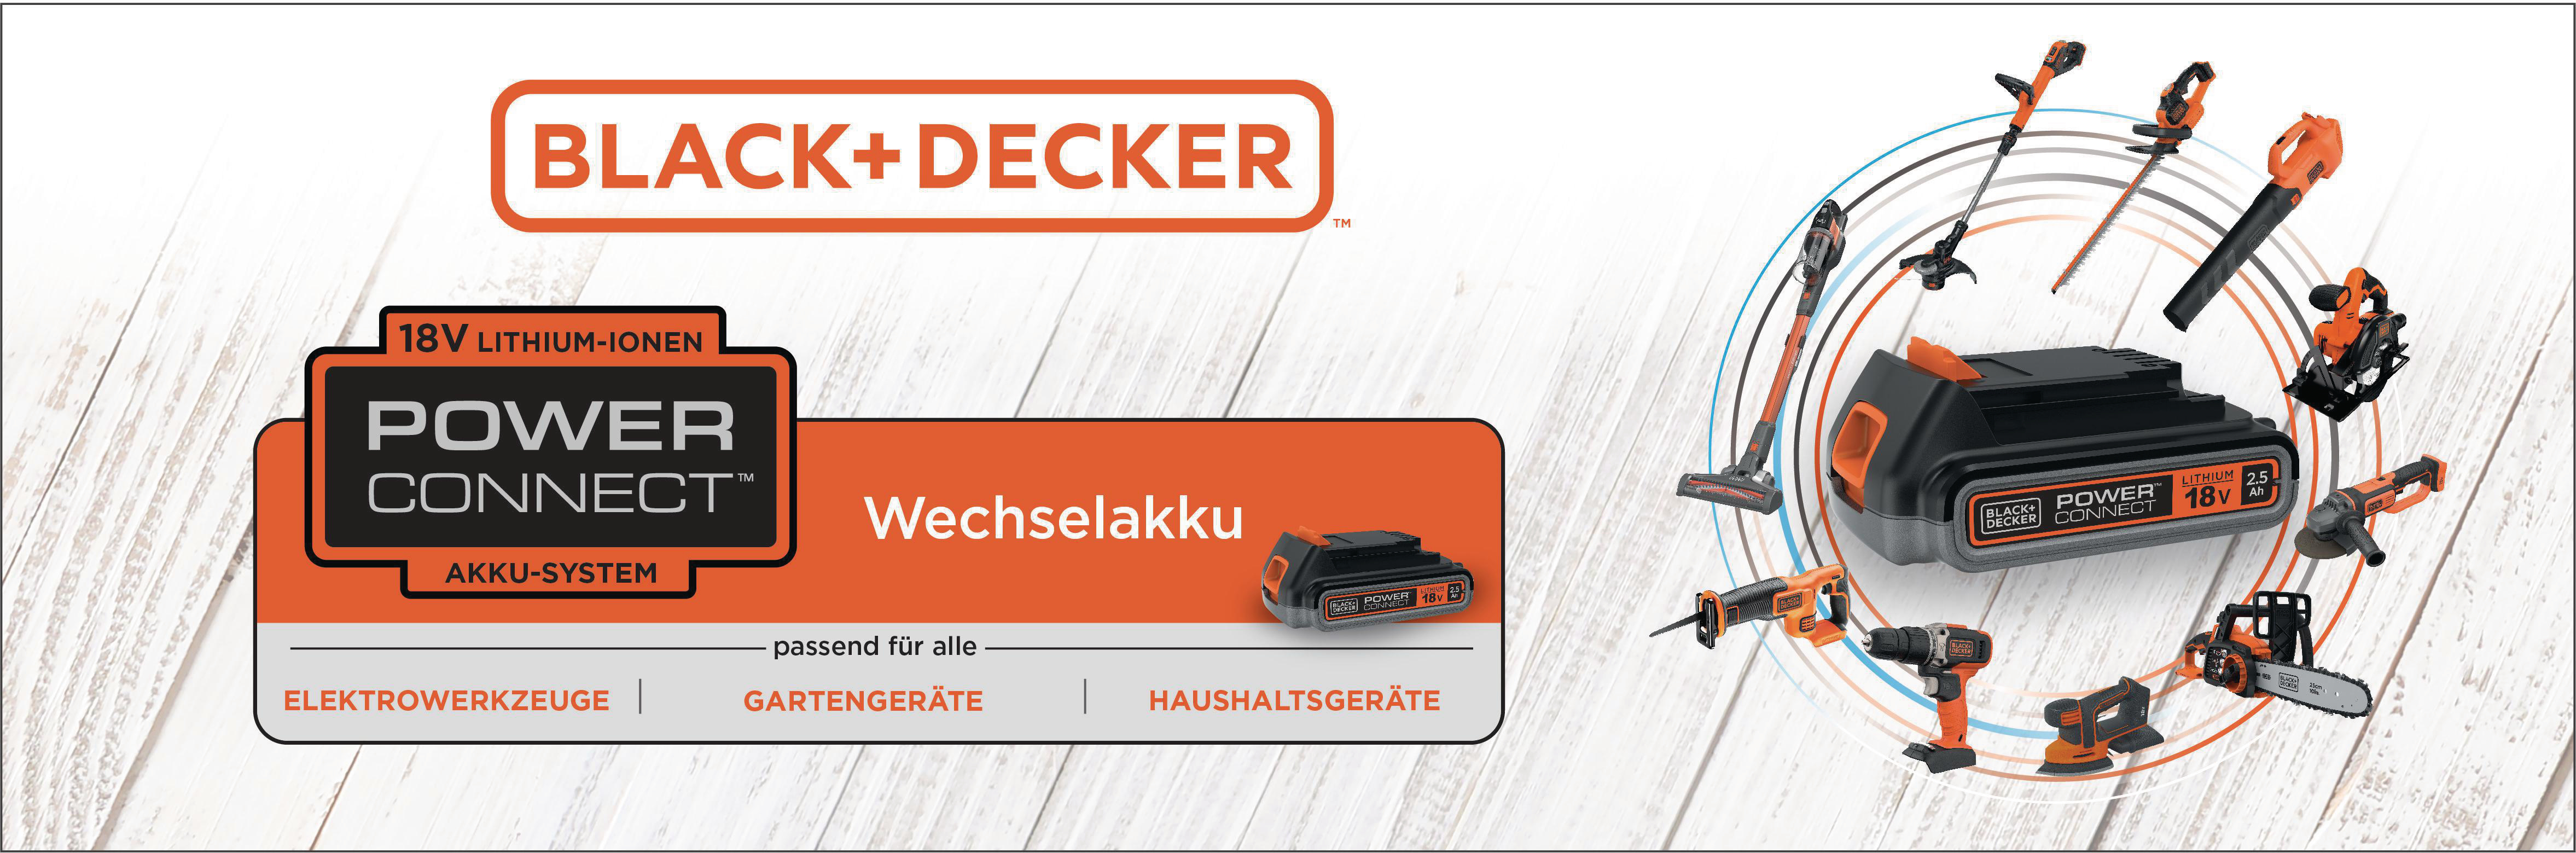 BLACK+DECKER BHFEV1825C mit Wechselakku Stielsauger, Watt Akkubetrieb, 45